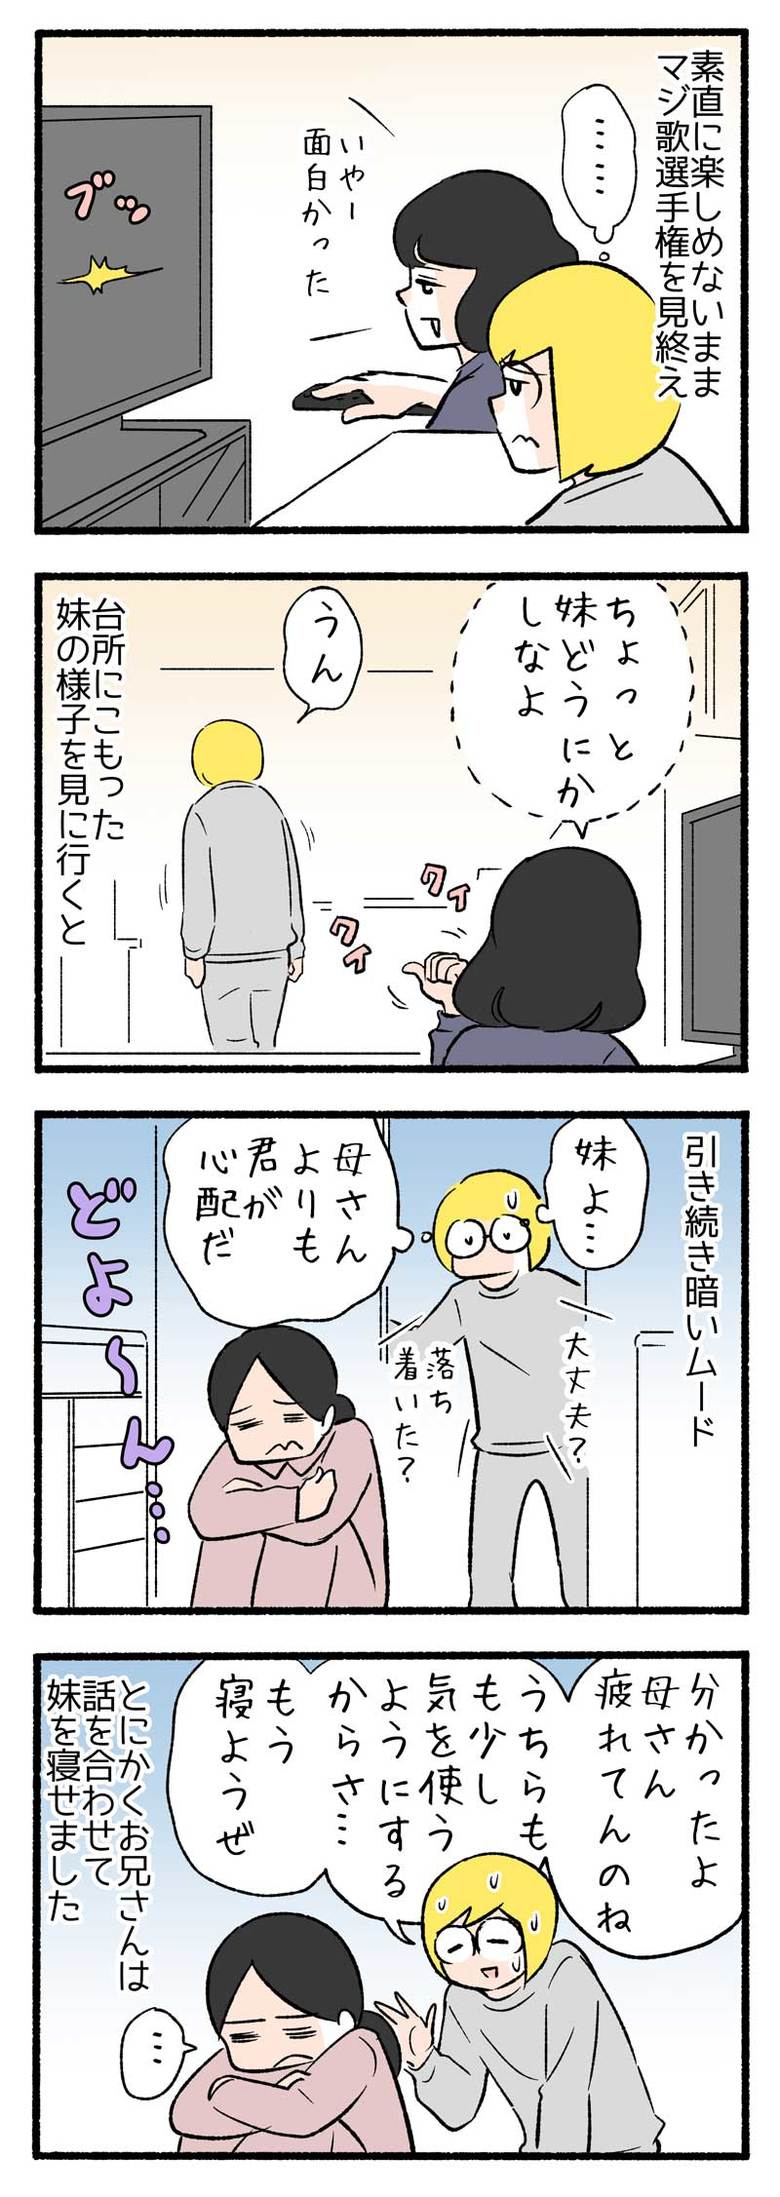 manga-nihipapa23_5